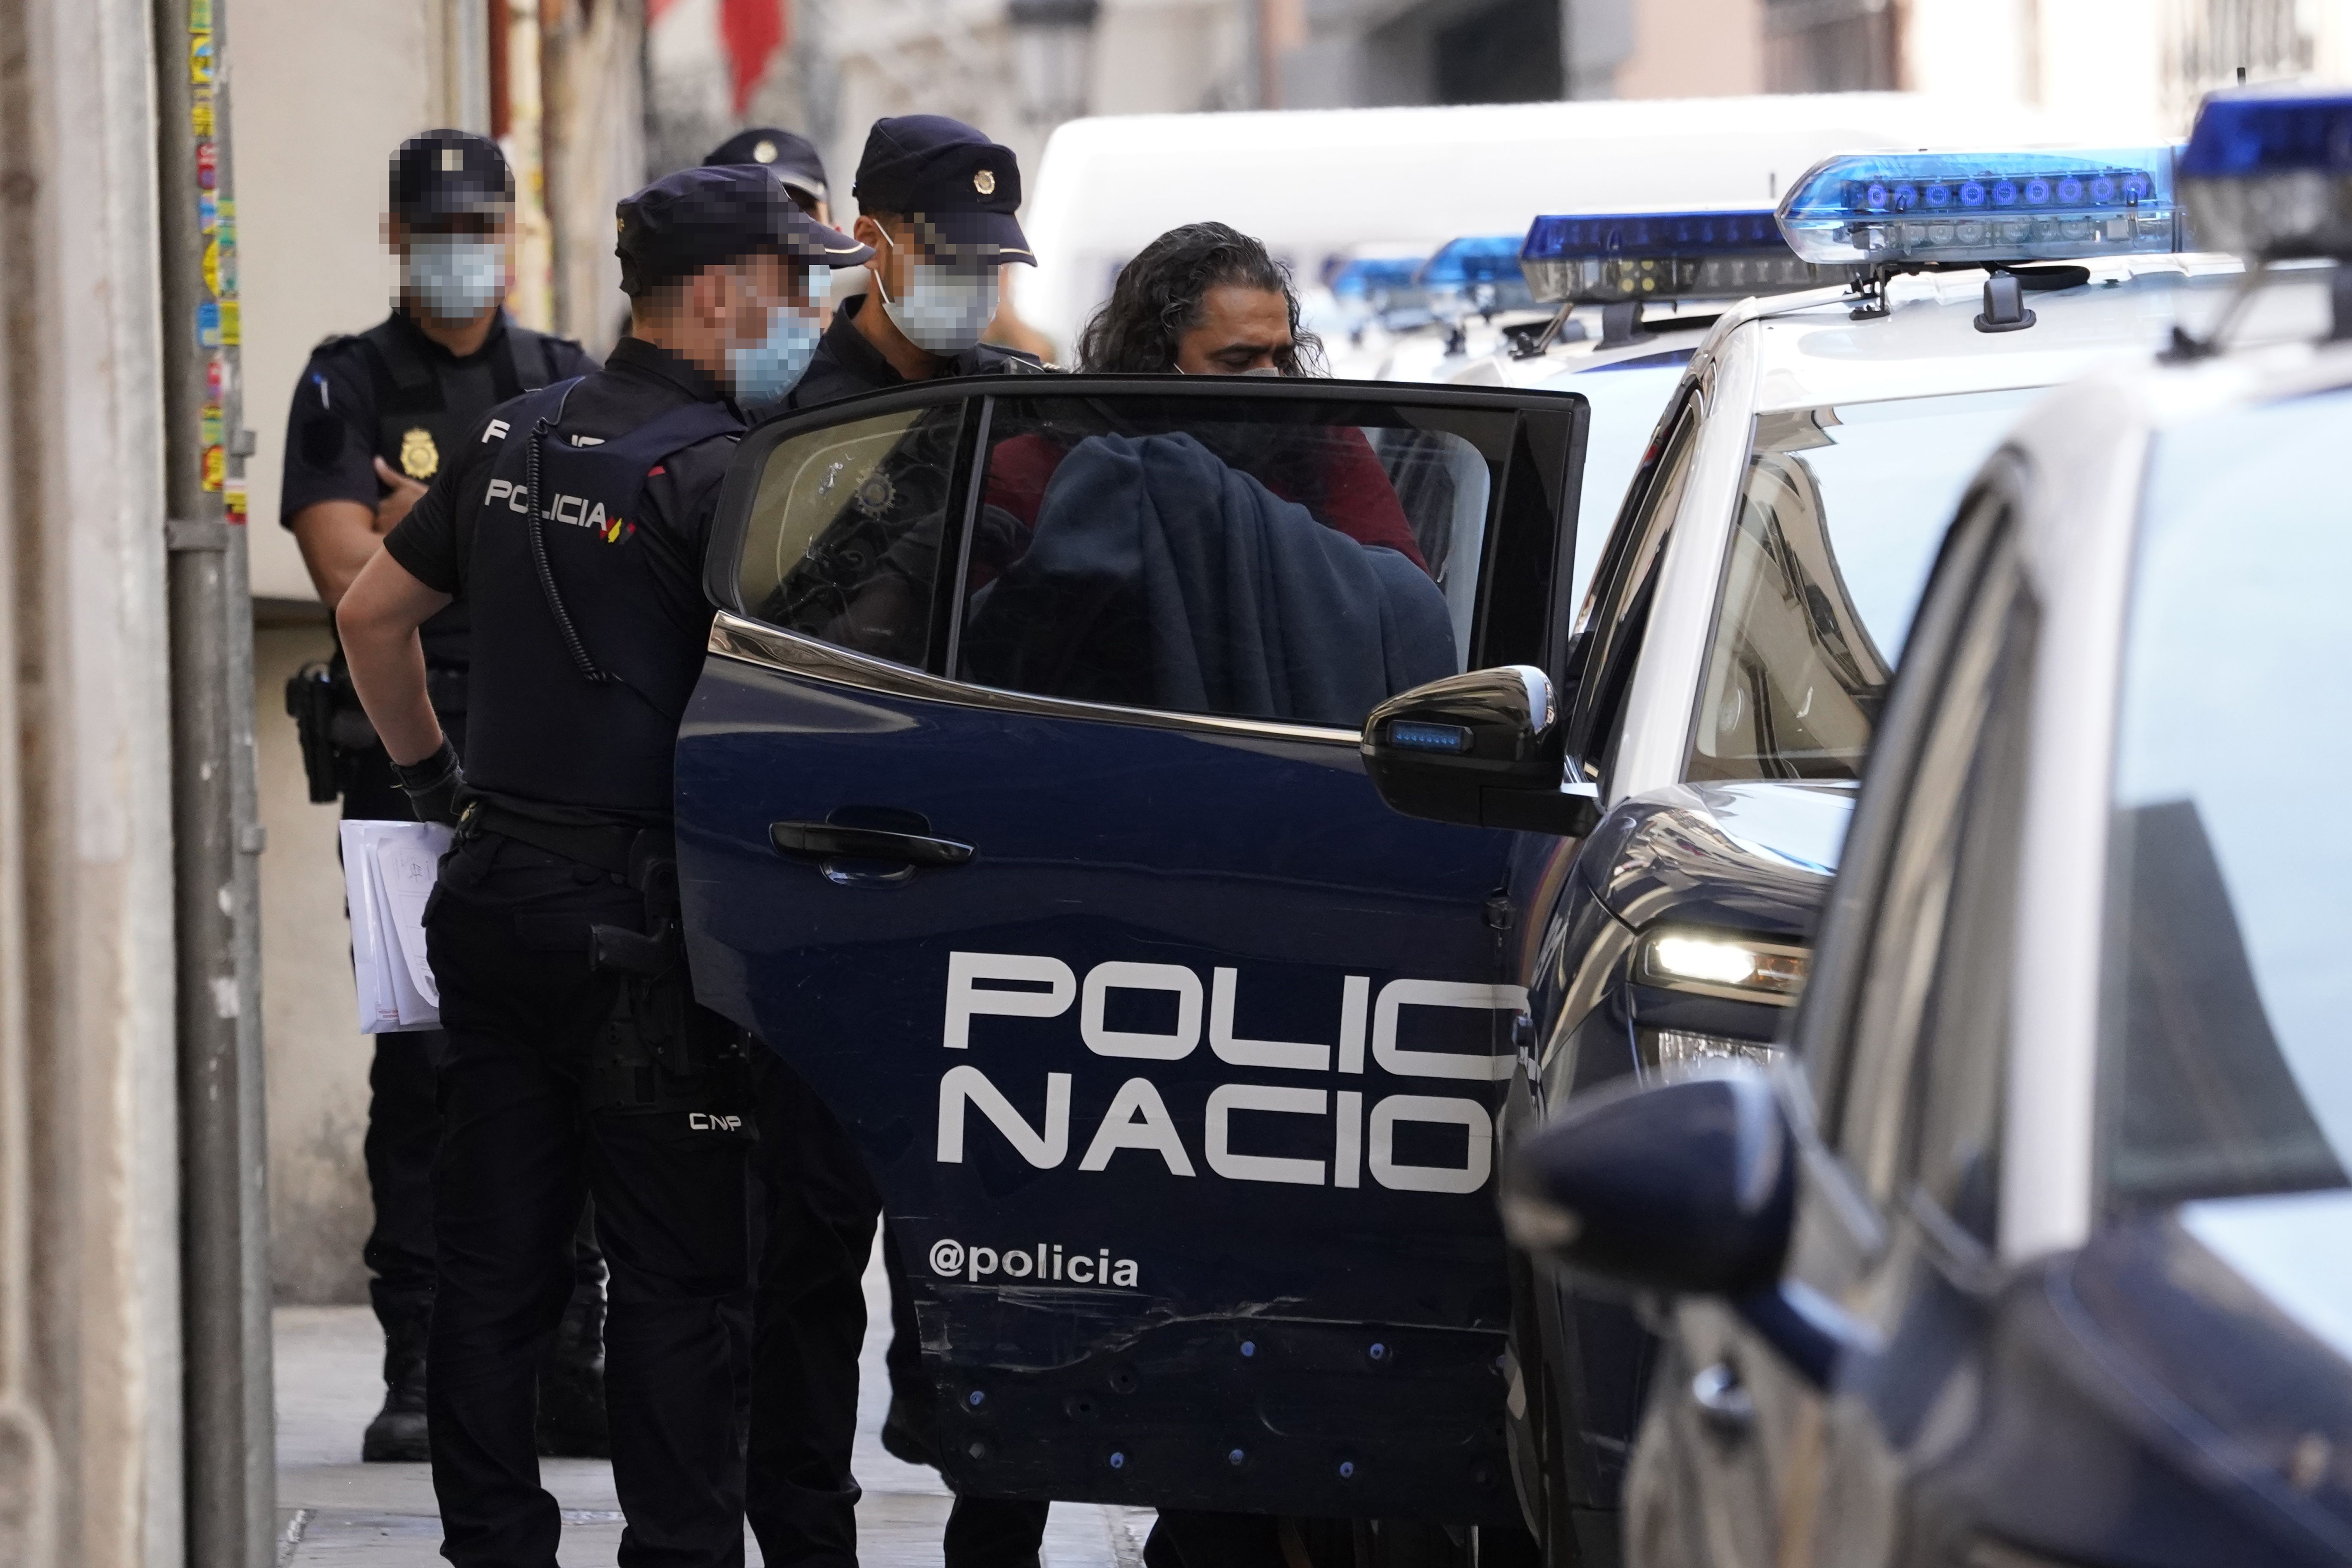 La Policía Nacional detiene a Diego 'El Cigala' acusado de violencia de género